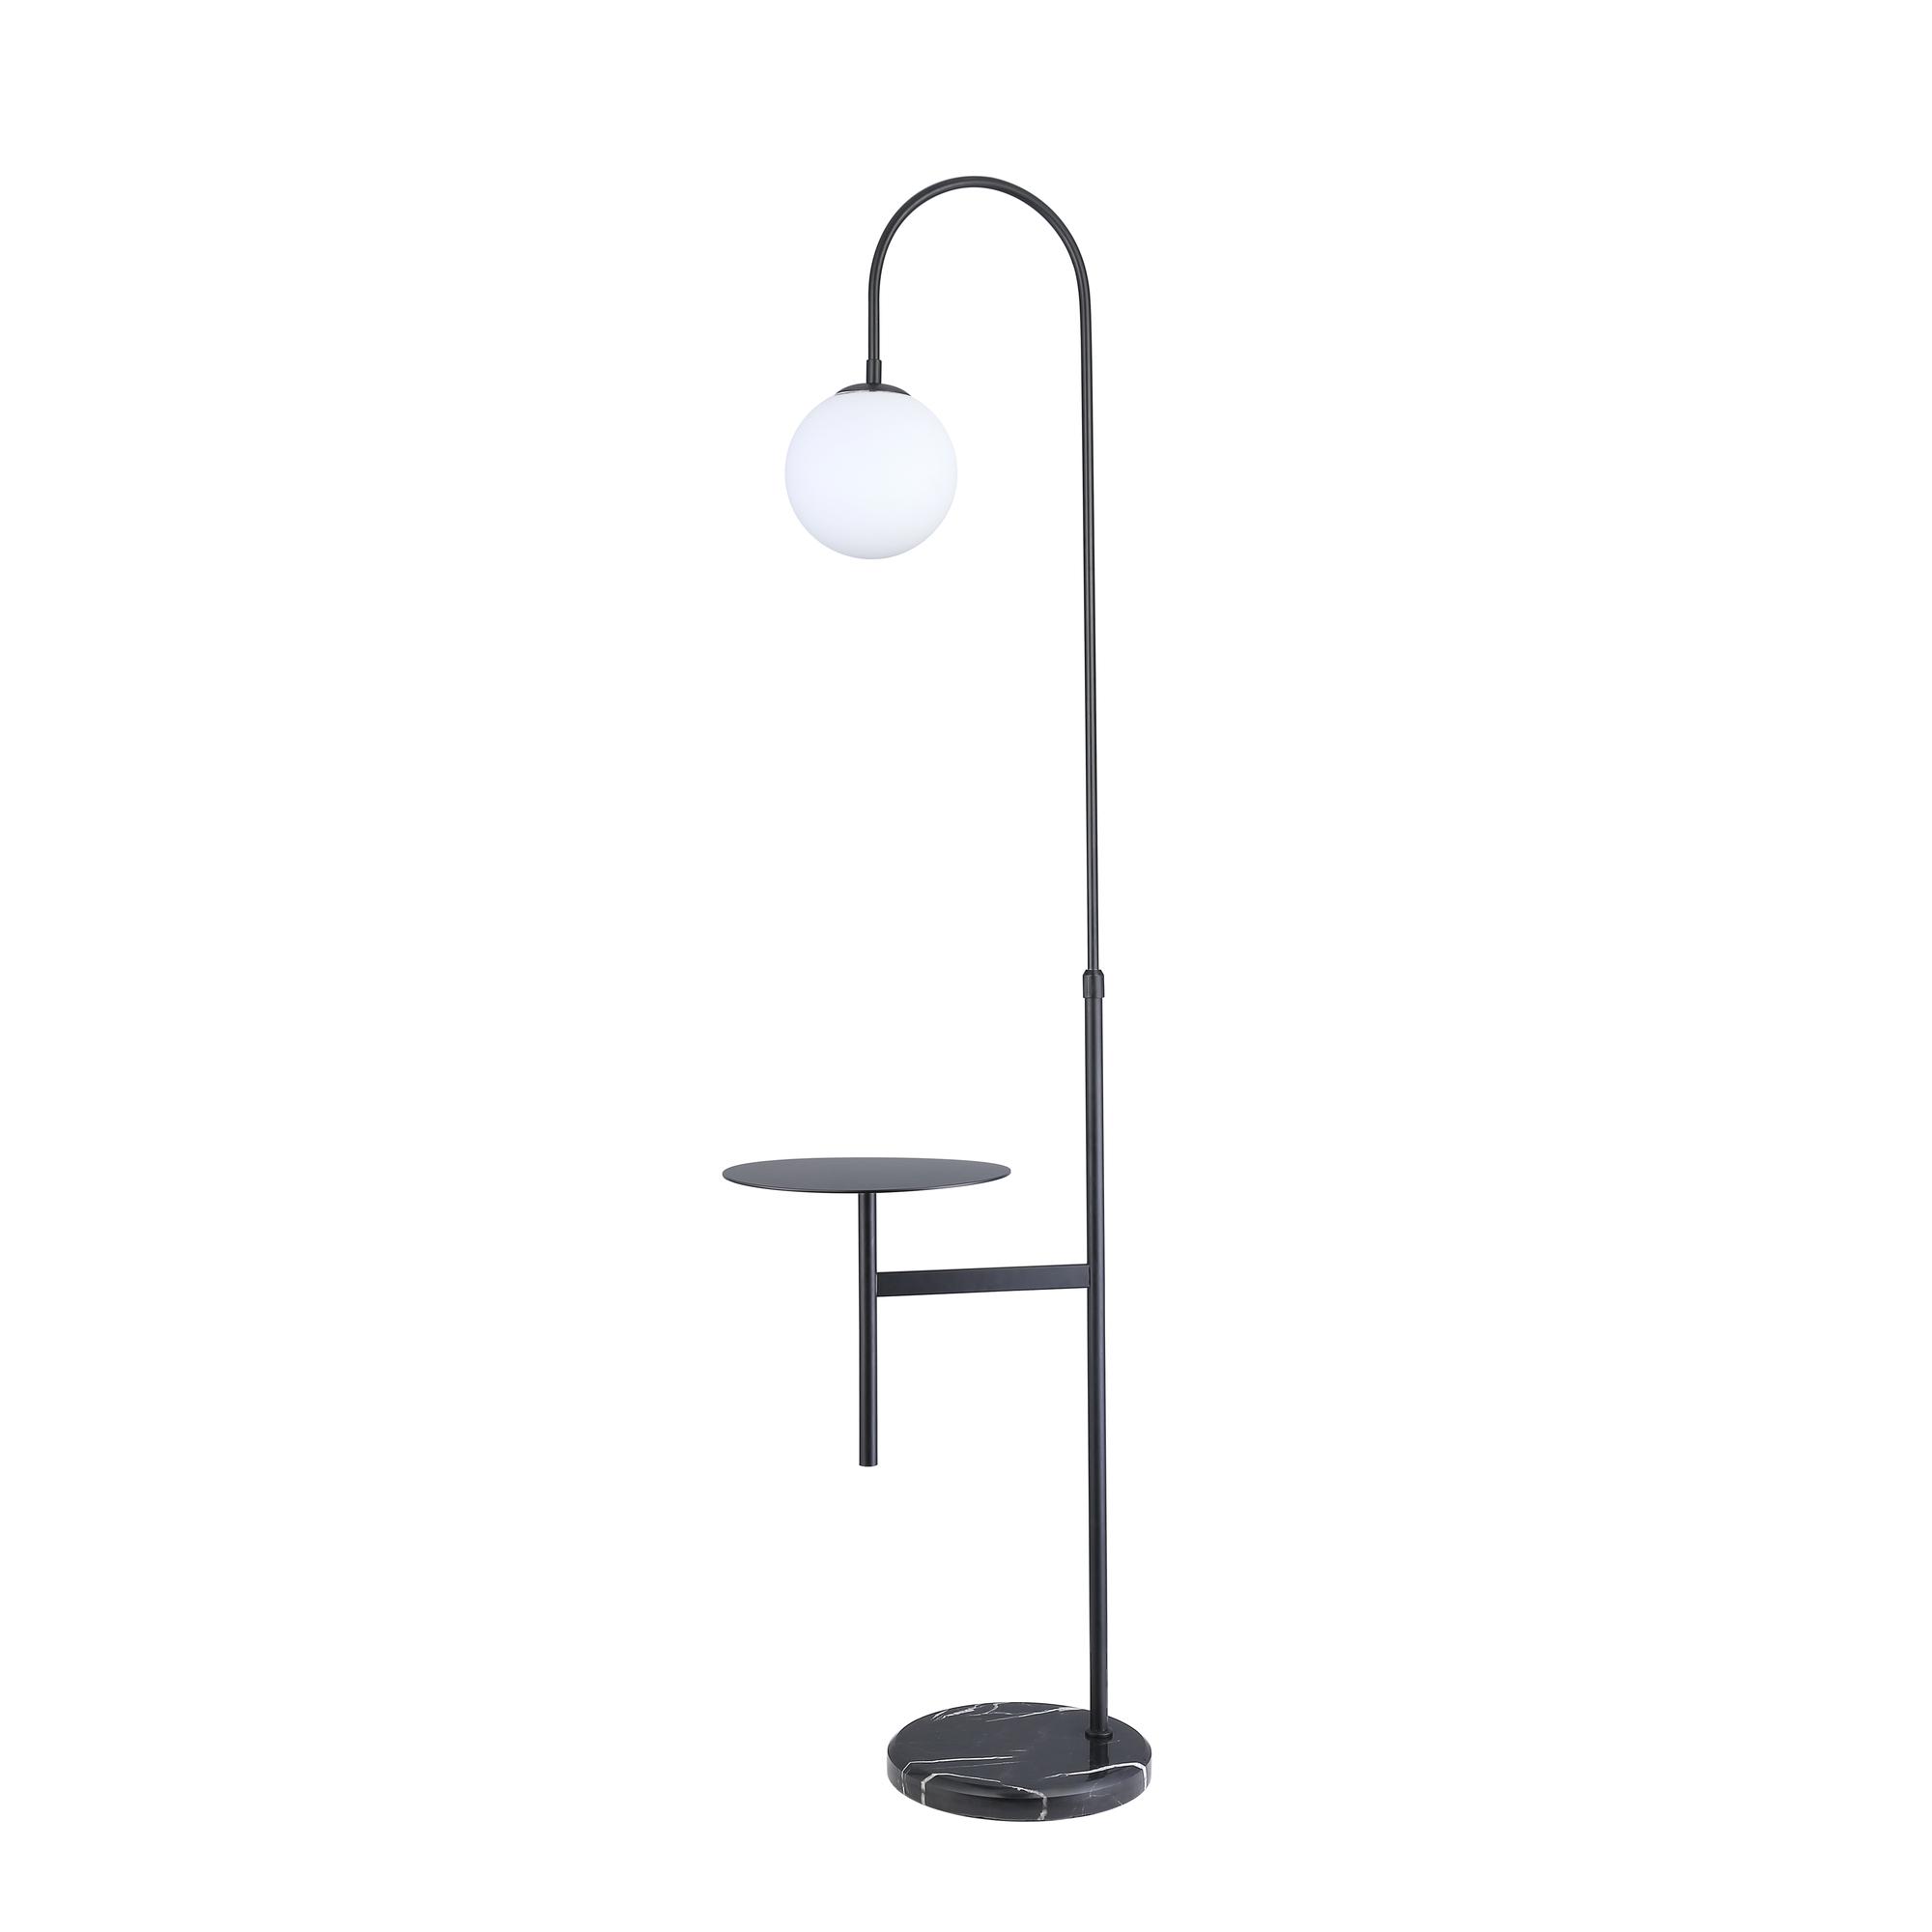 FLOOR LAMP - 541-780018/1